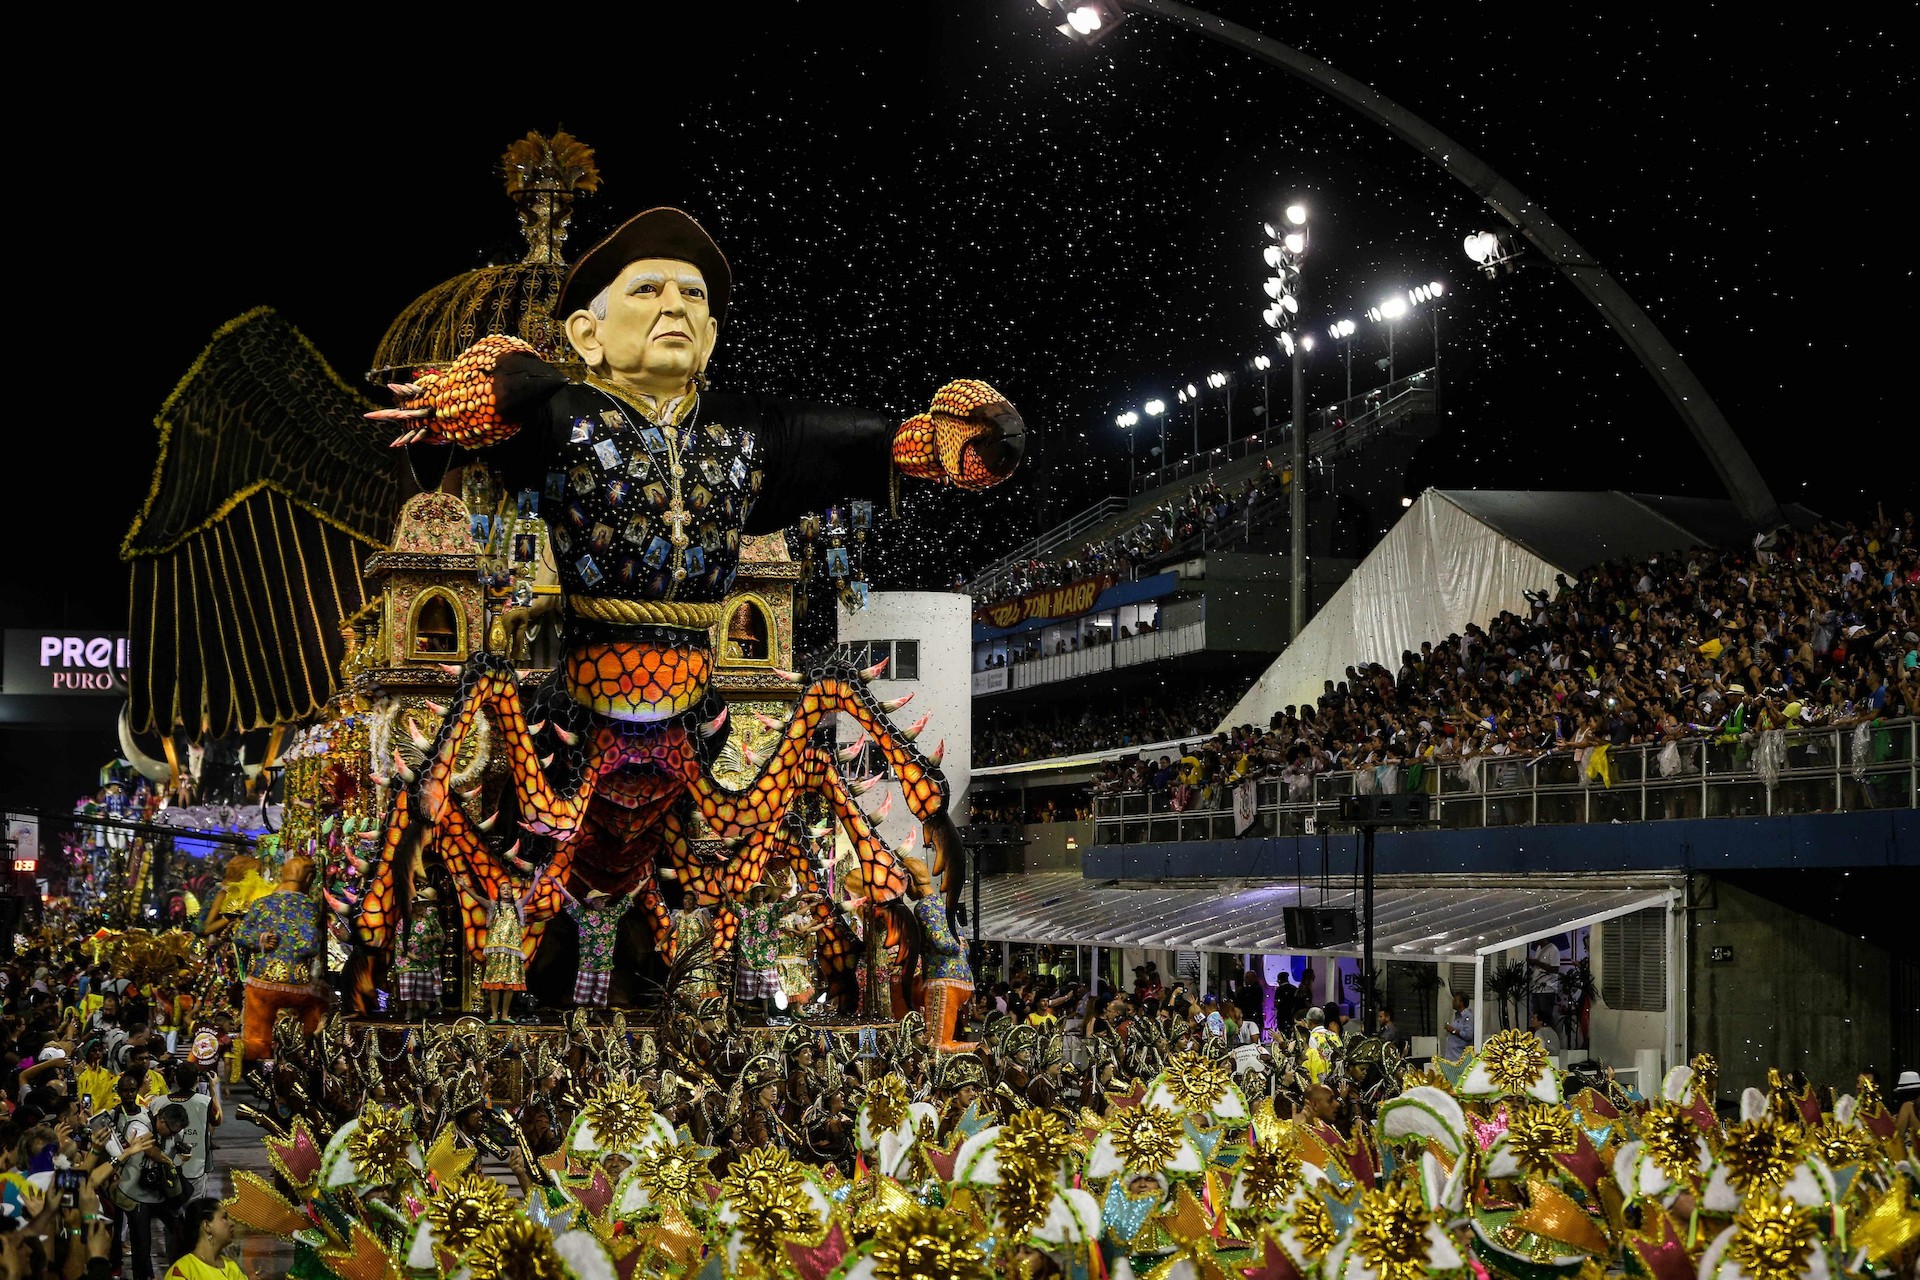 Las fotos más espectaculares del carnaval en Brasil Chic